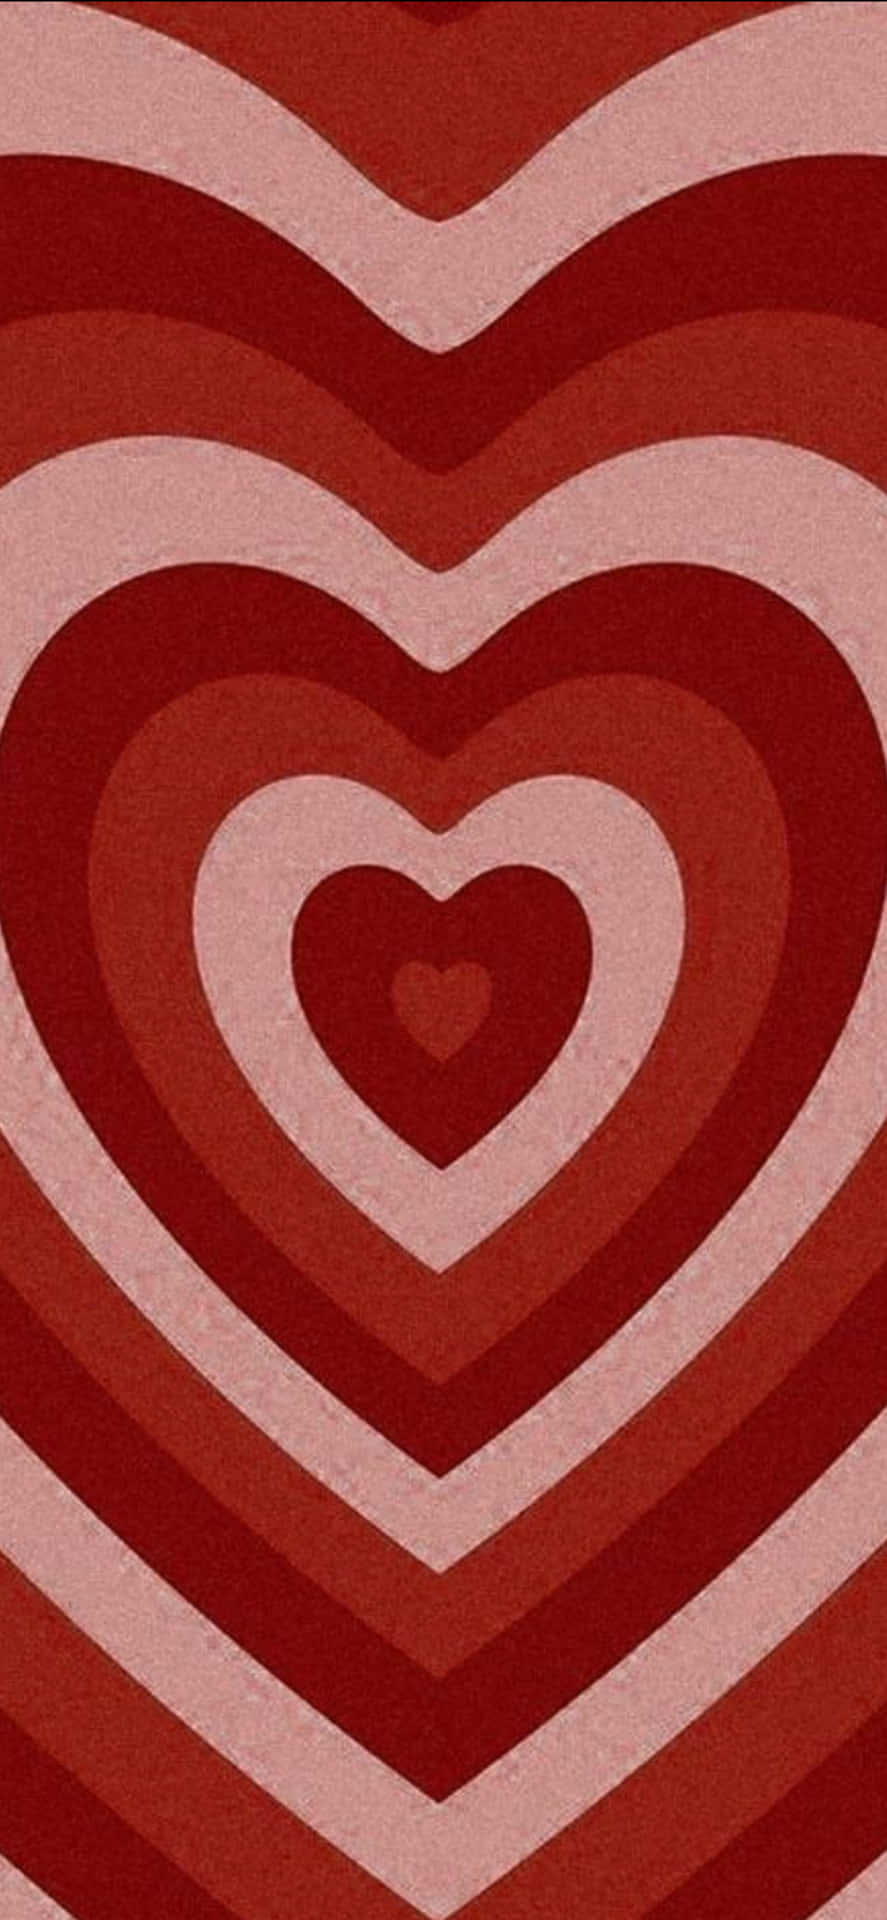 Digital Artwork Heart Shape Aesthetic Valentine's Day Wallpaper